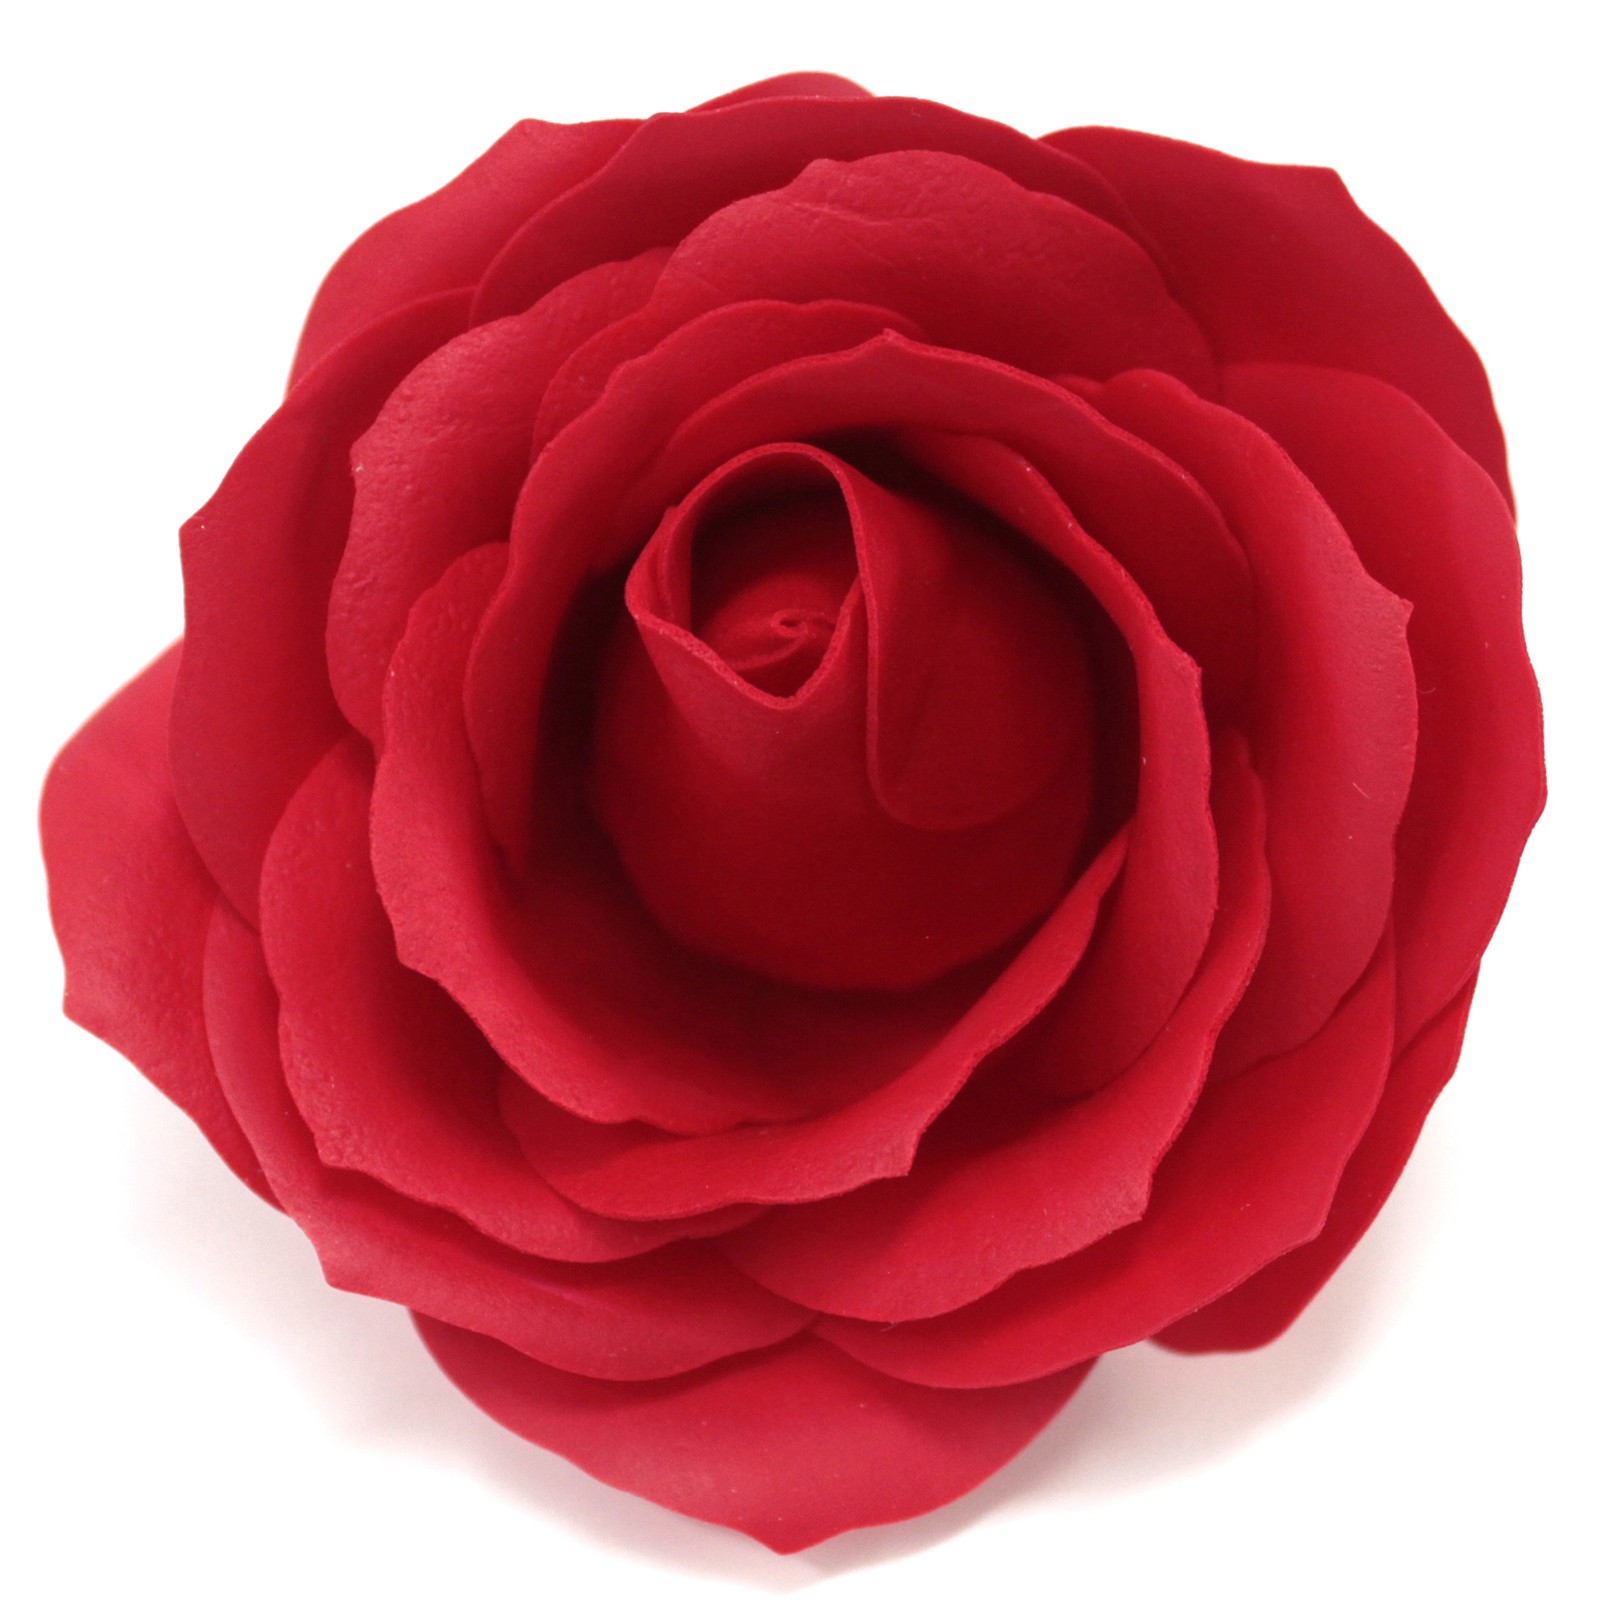 Mýdlové květy - velké růže - Červené (25 ks)